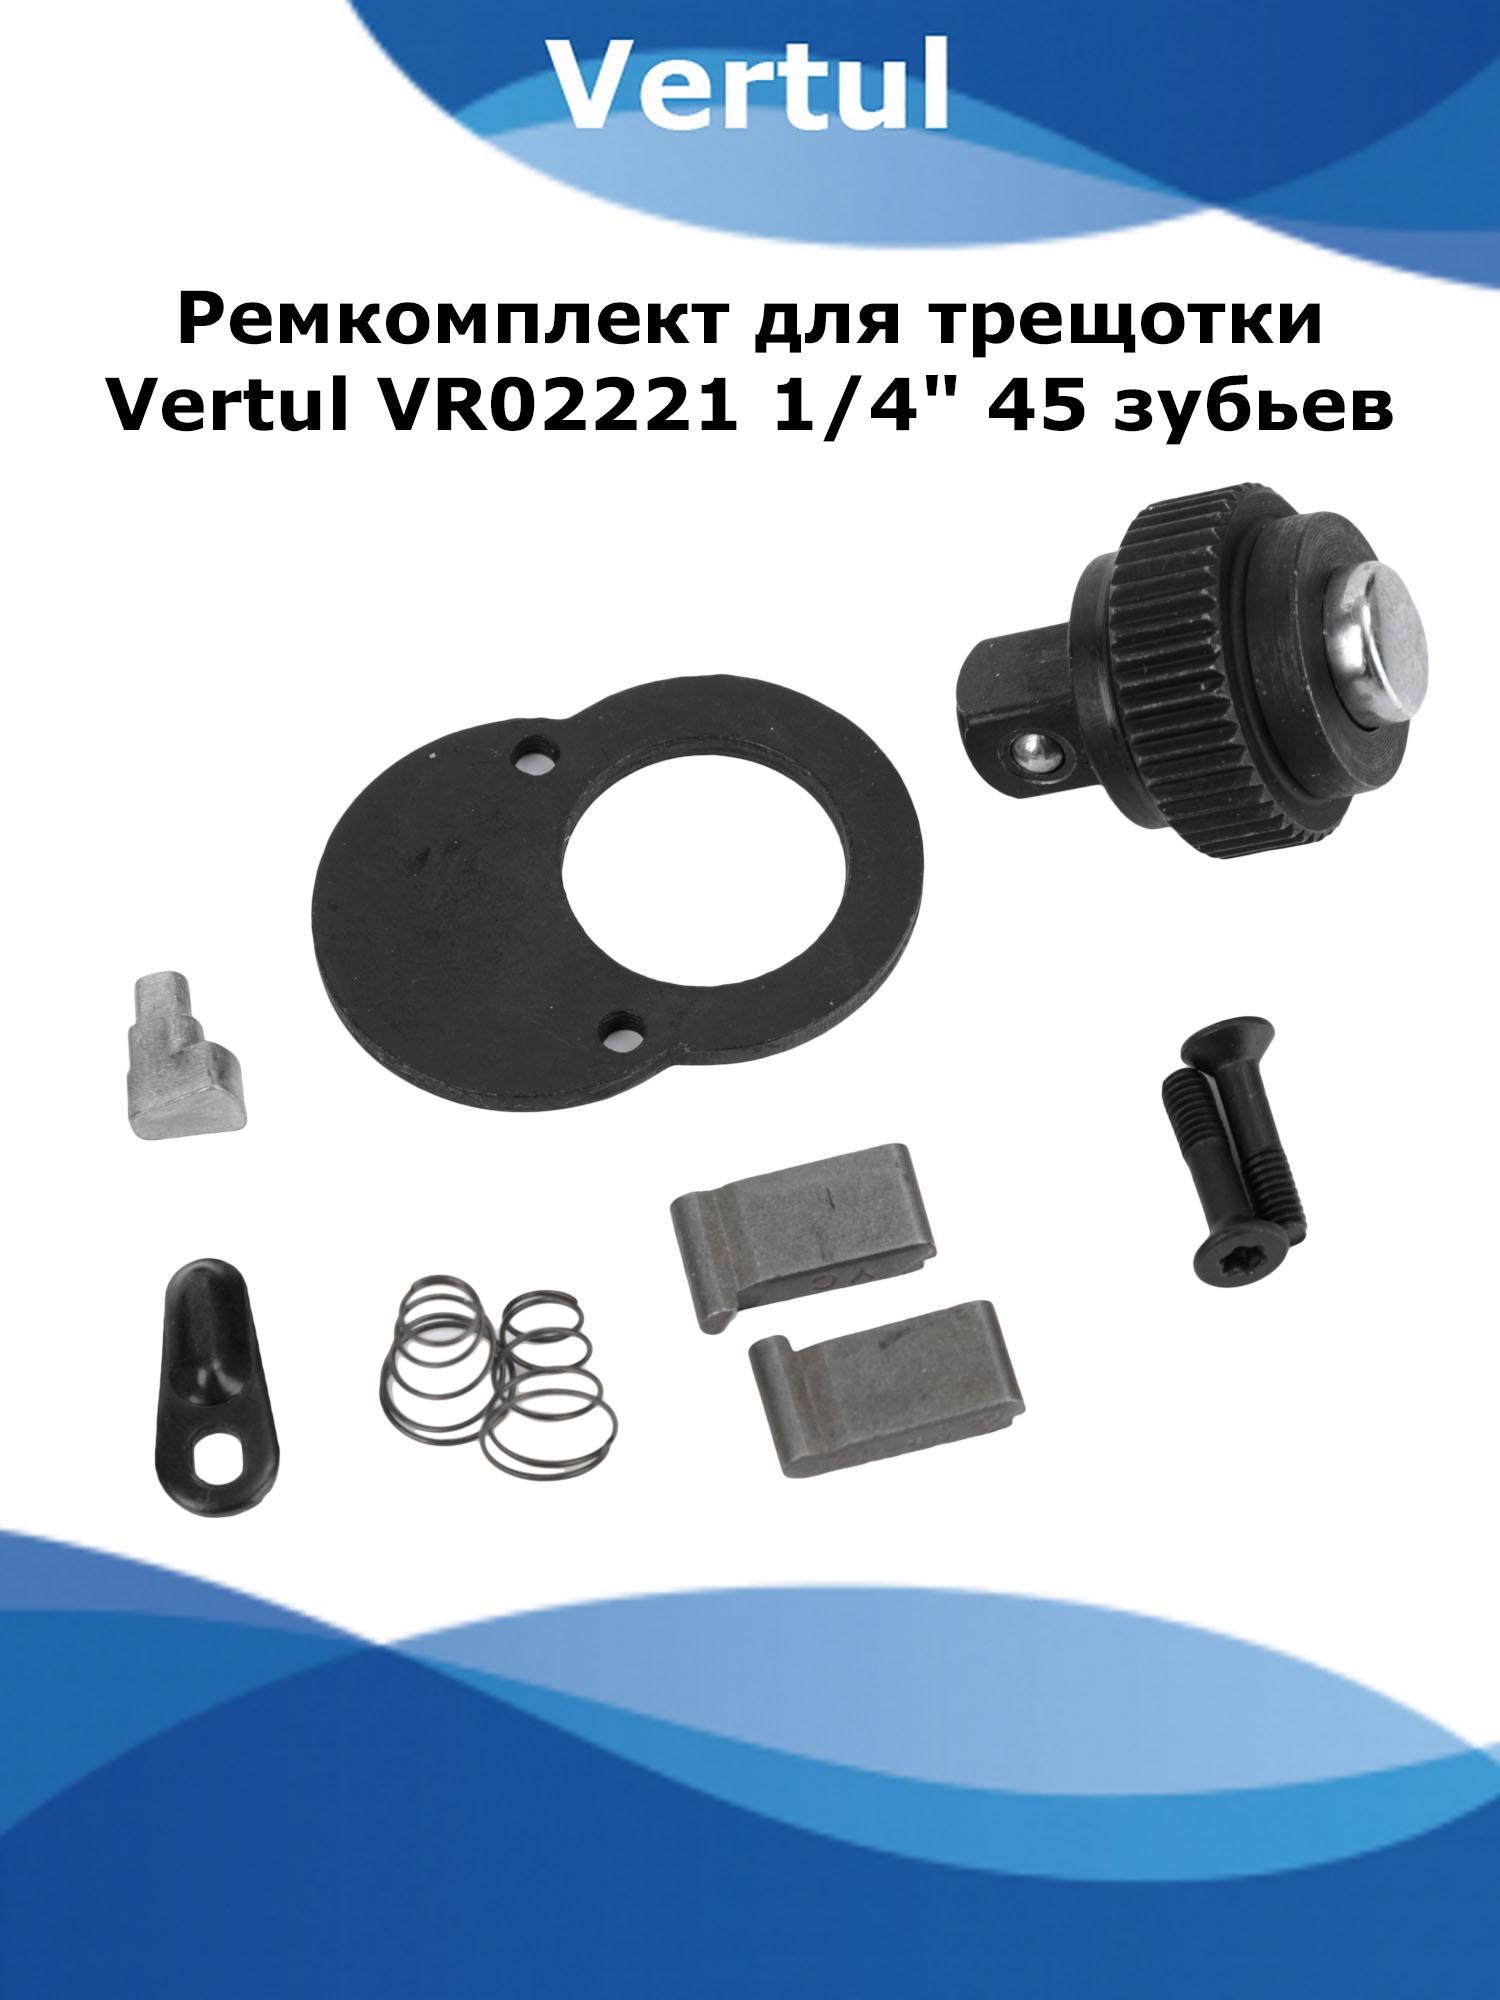 Ремкомплект Vertul VR02221P для трещотки VR02221 1/4